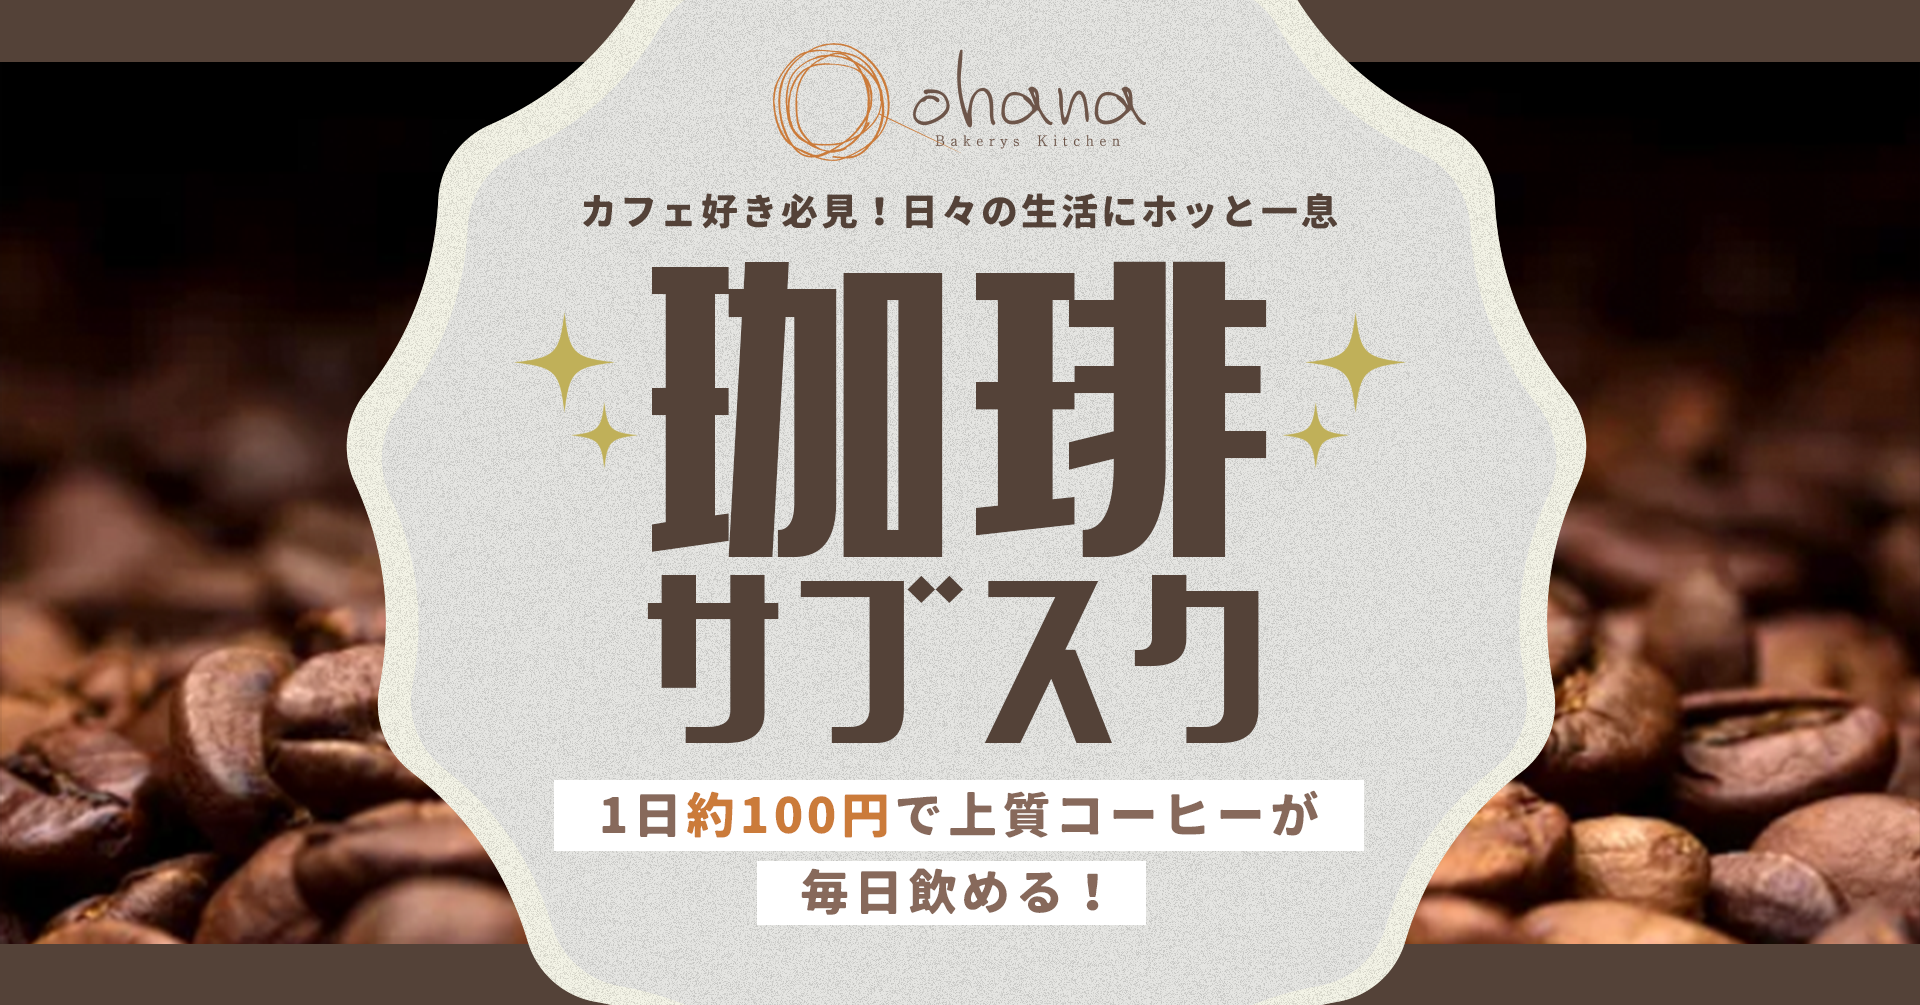 パンとコーヒーの最高の組み合わせ！
ohana二子玉川店で、コスタコーヒーを毎日堪能できる
サブスクプラン開始